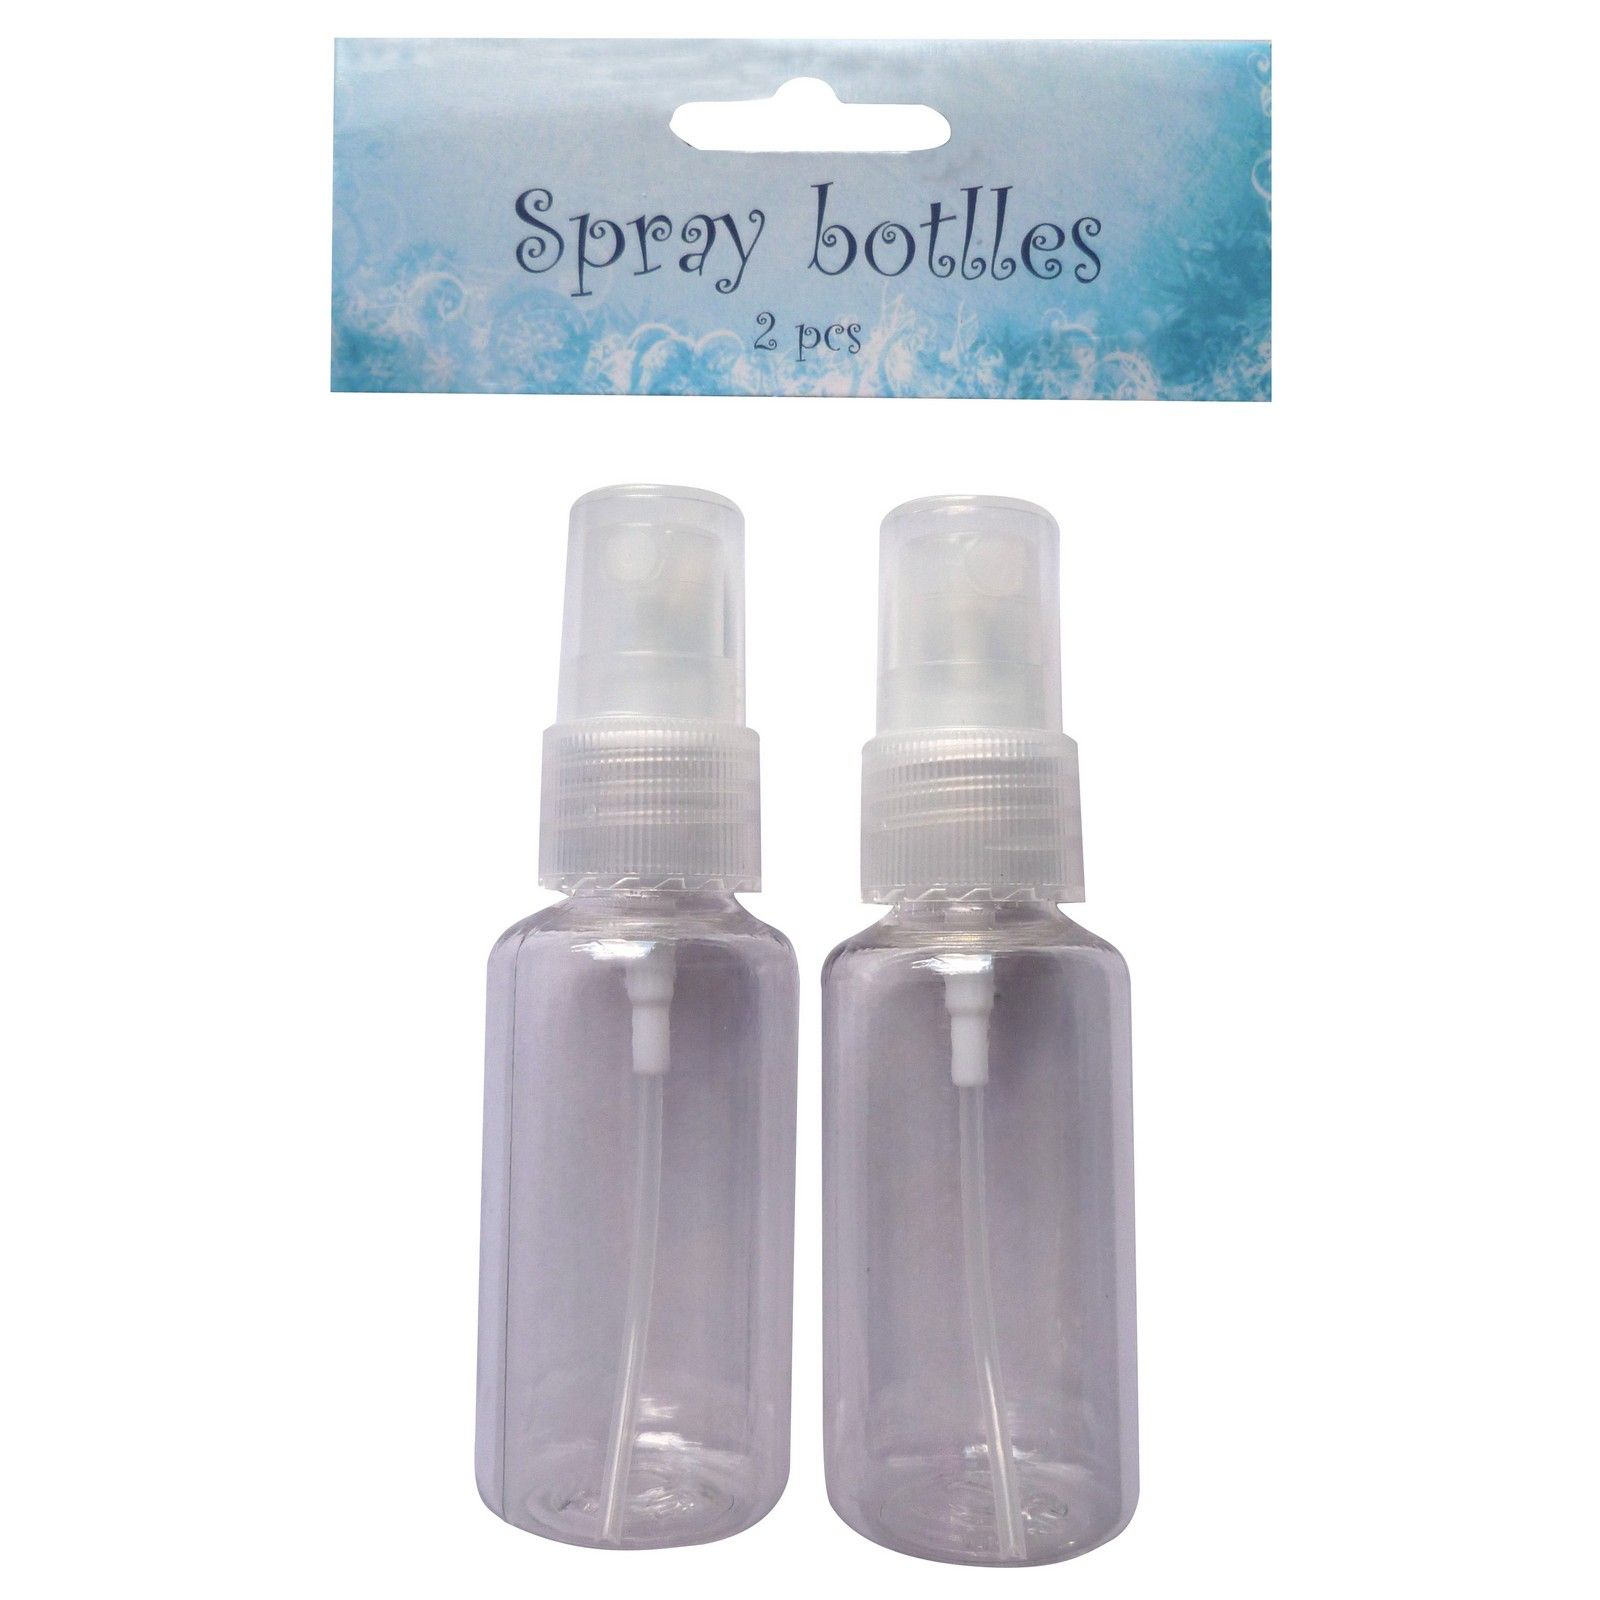 Nellie's Choice • Bottles 2 Spray Bottles